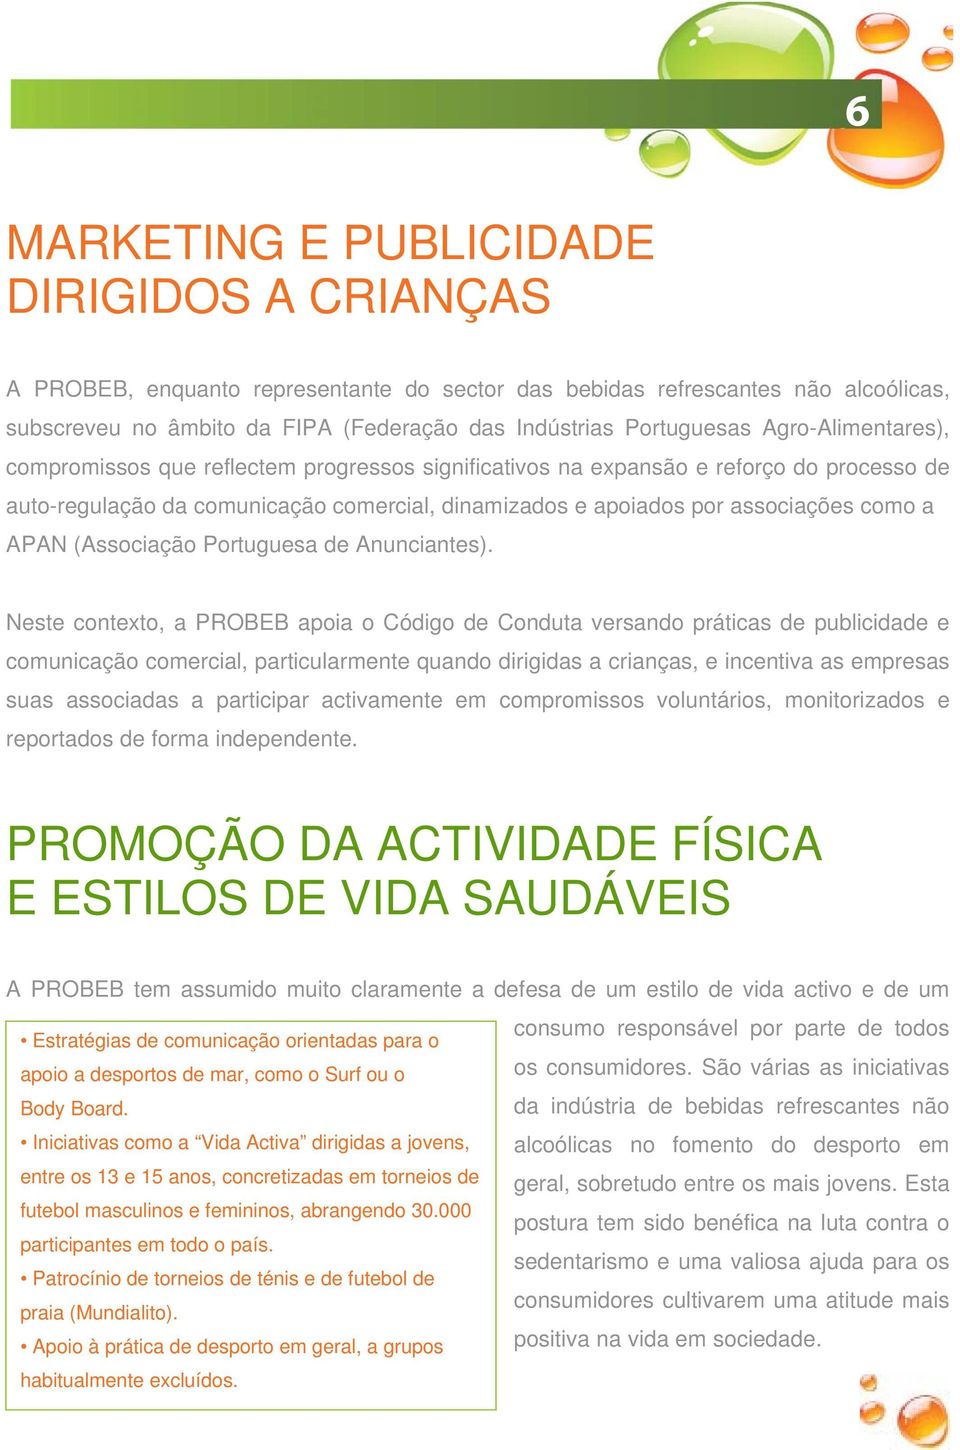 APAN (Associação Portuguesa de Anunciantes).